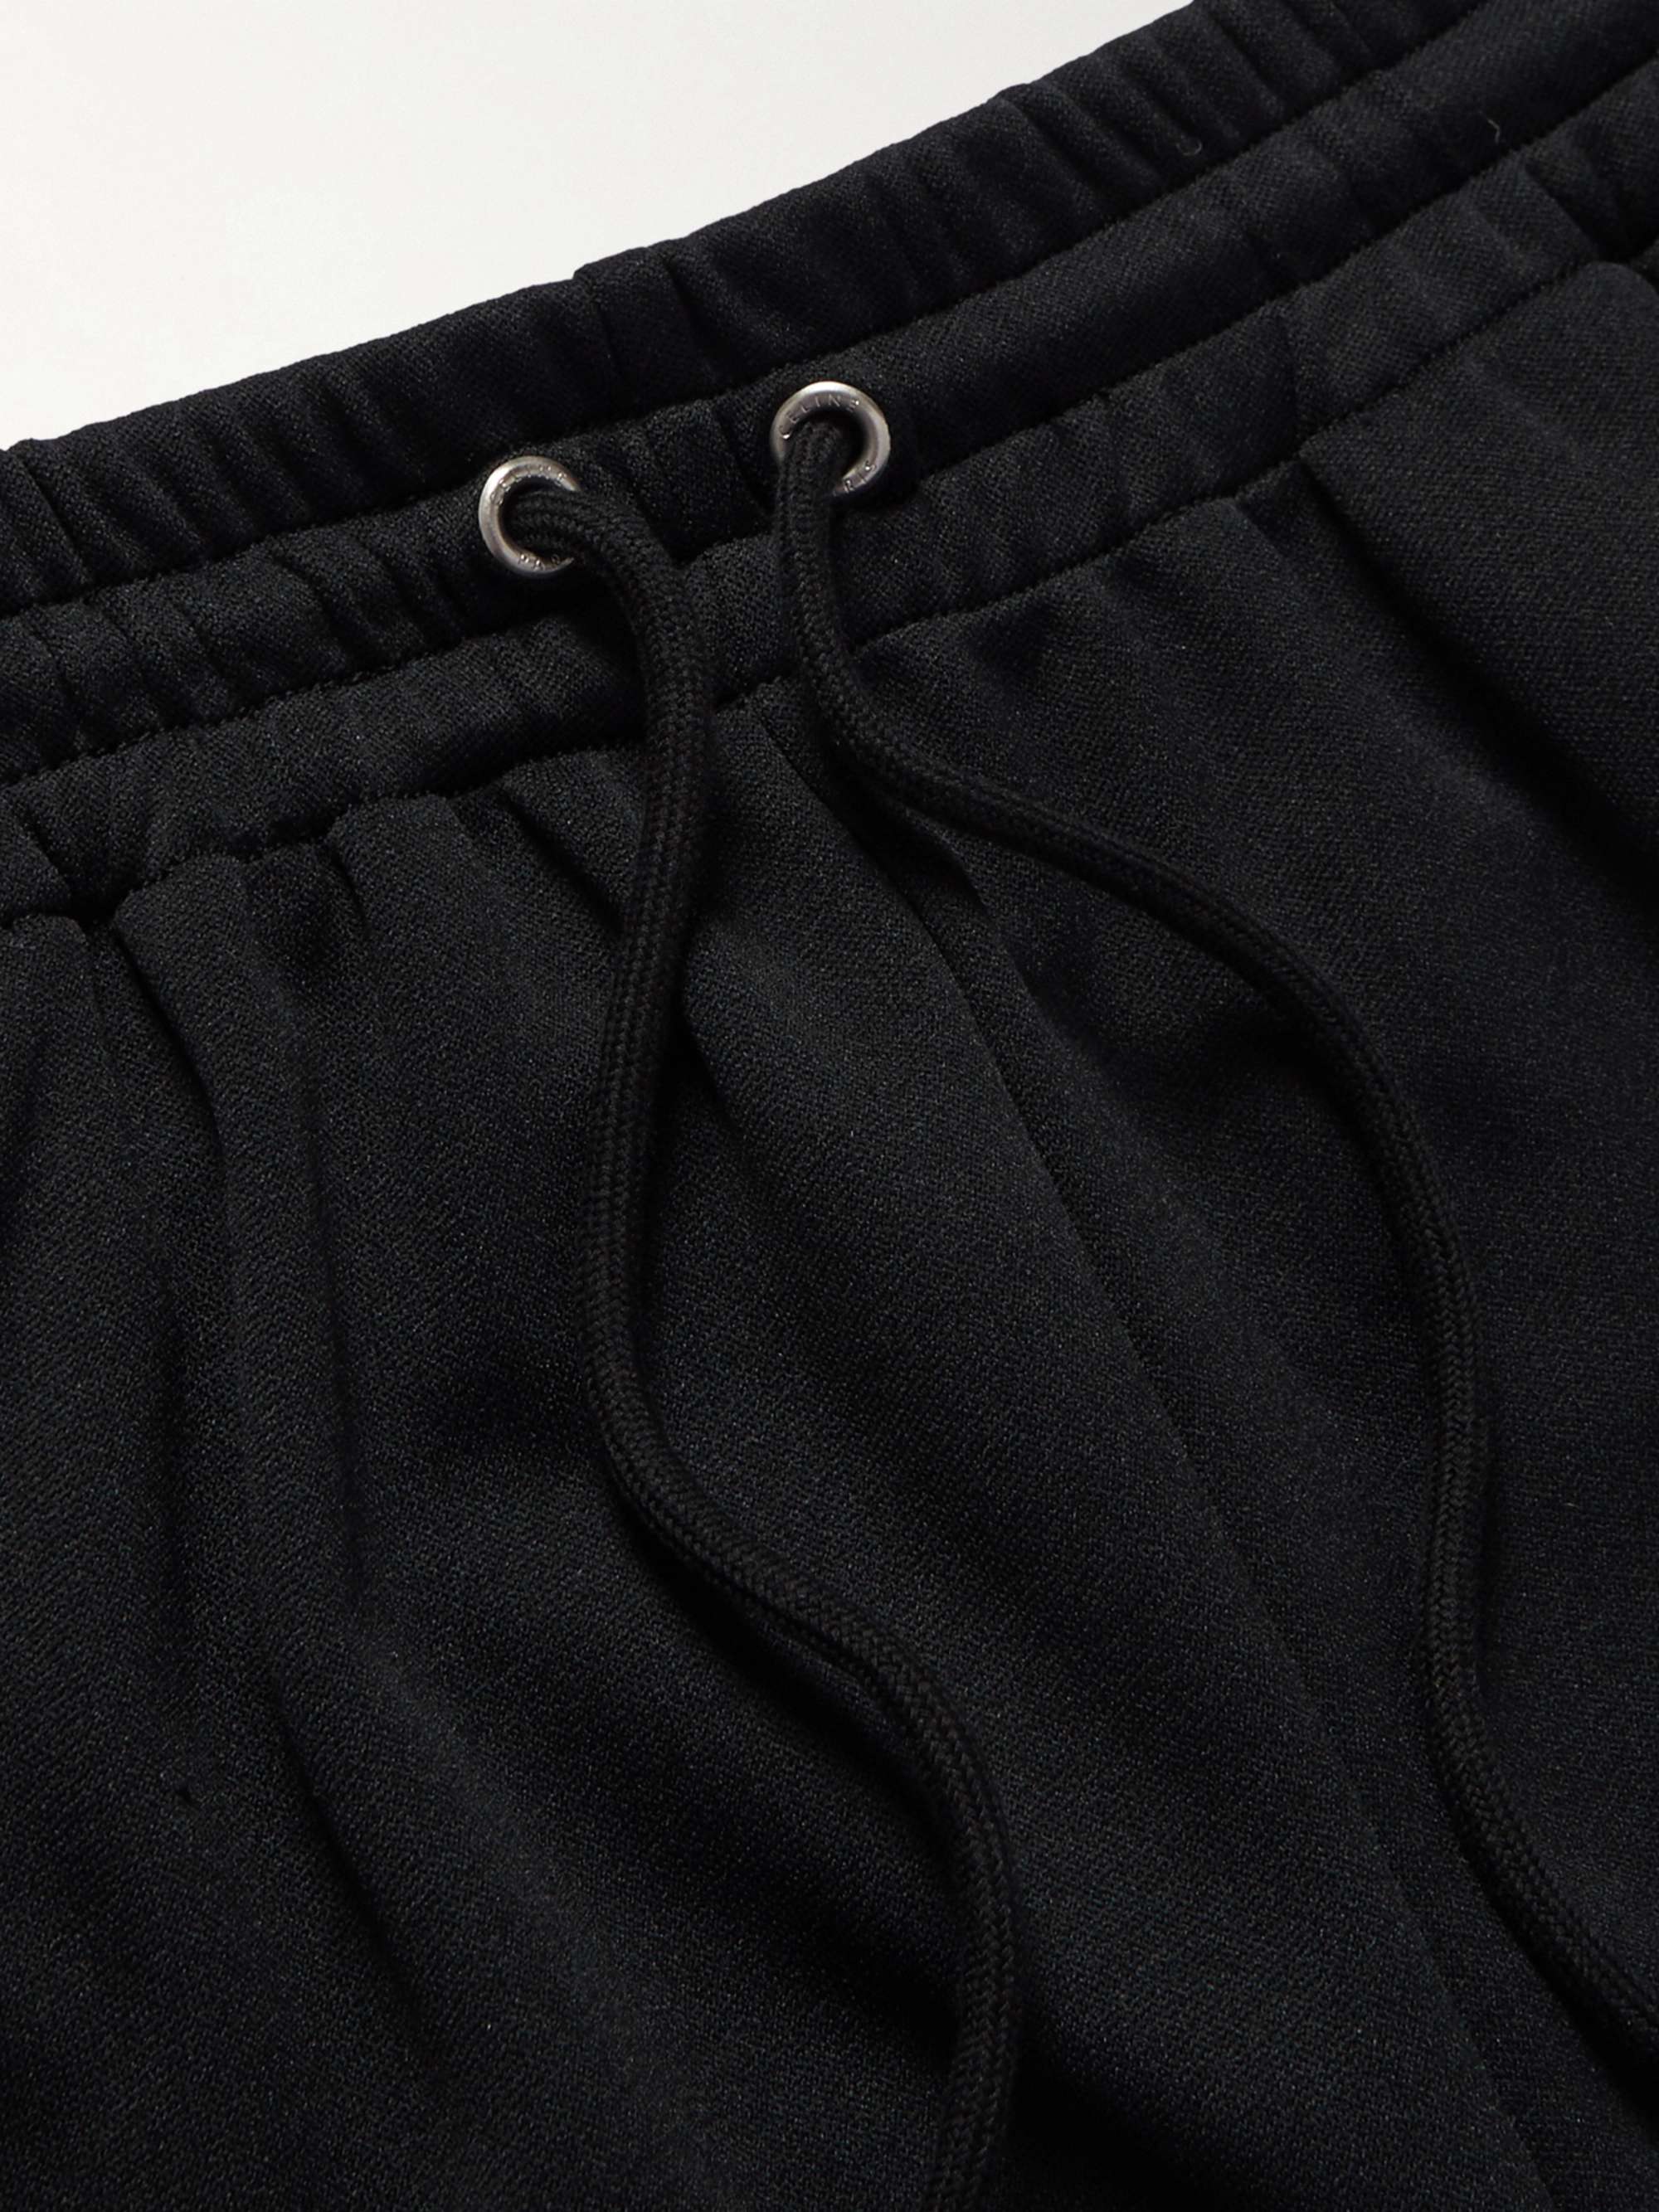 CELINE HOMME Straight-Leg Logo-Print Jersey Track Pants for Men